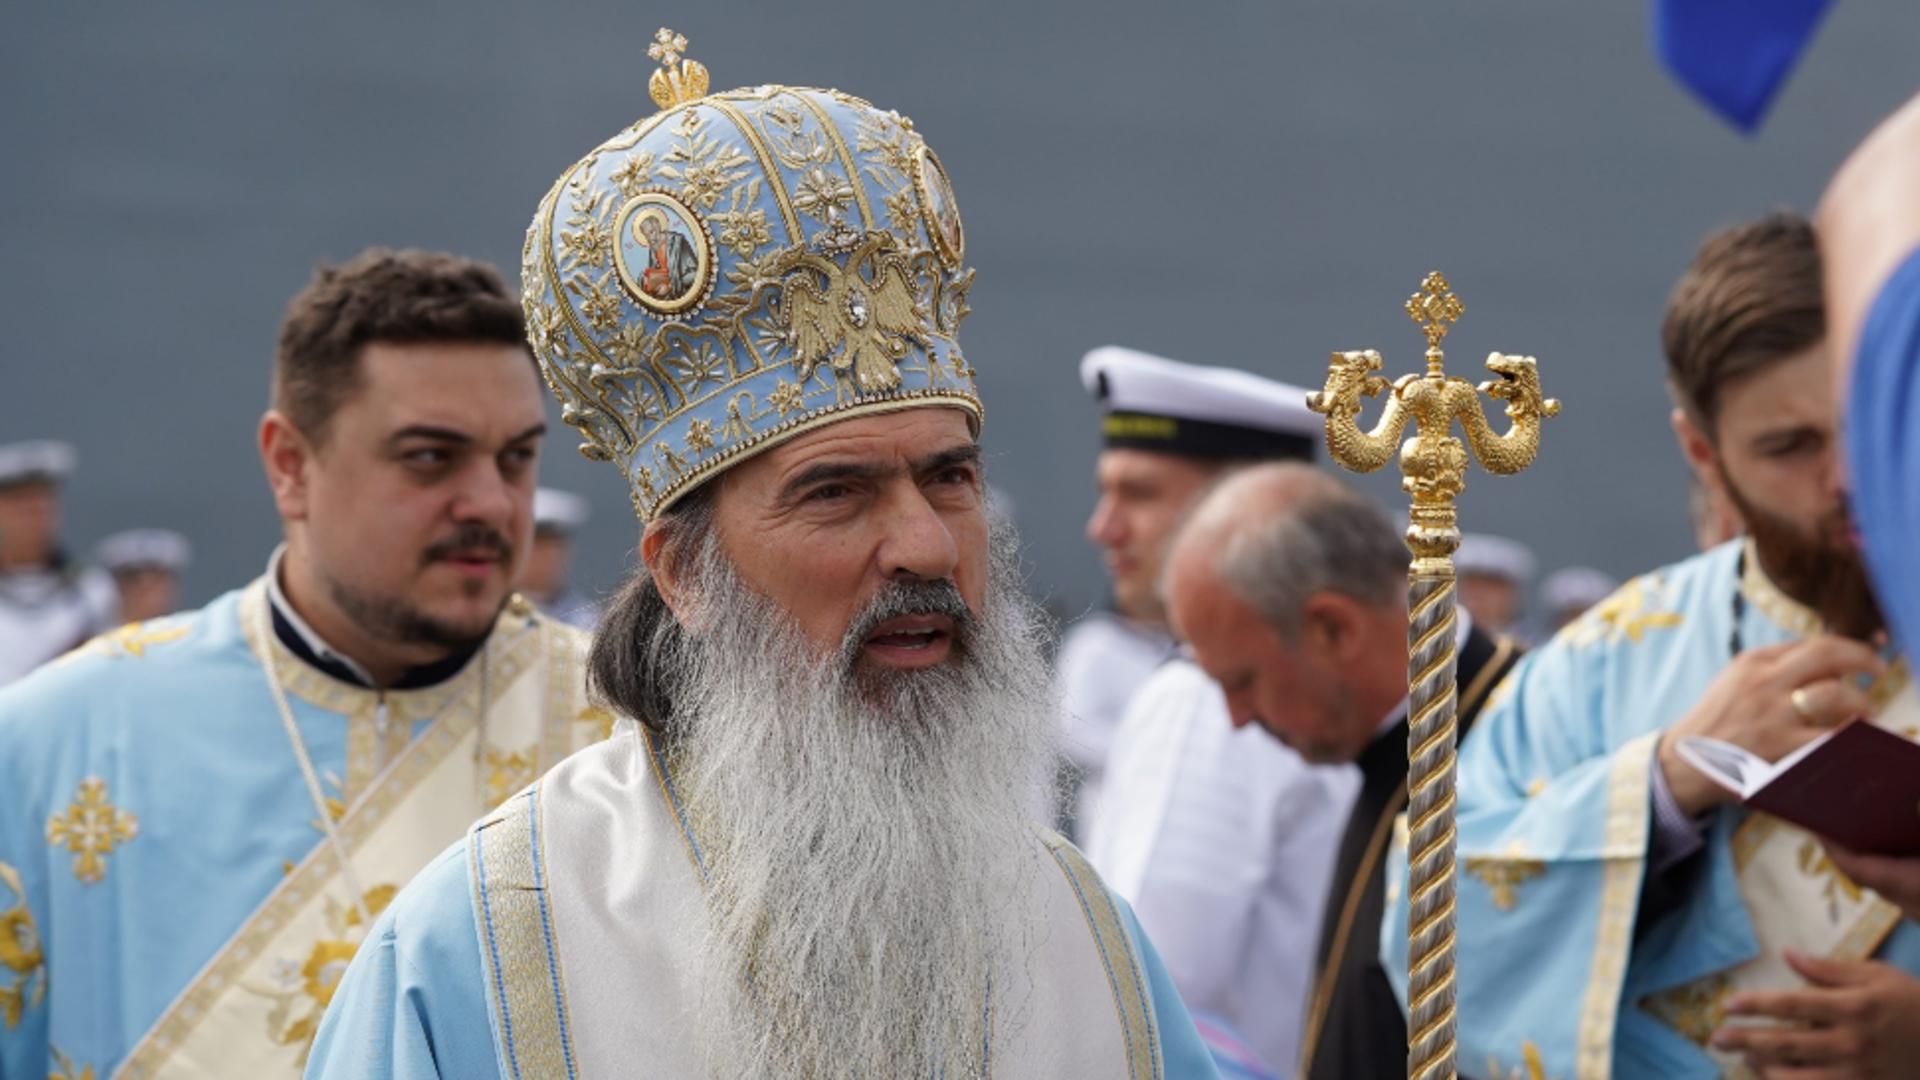 Arhiepiscopul Teodosie nu renunță! În plină pandemie organizează trei zile de sărbători religioase